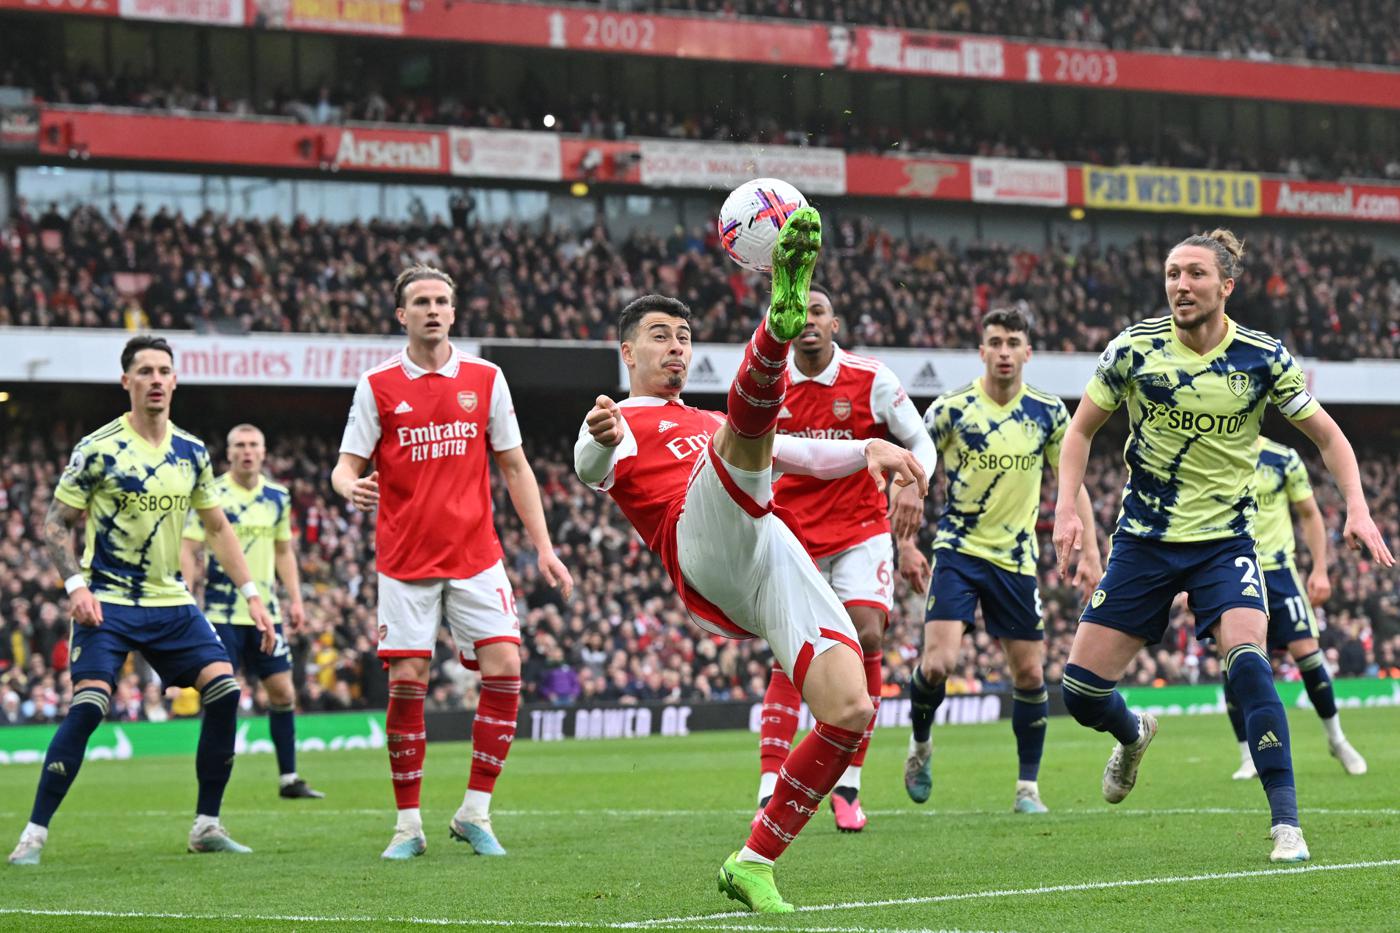 Arsenal - Leeds - 4:1. Meisterschaft von England, 29. Runde. Spielbericht, Statistiken